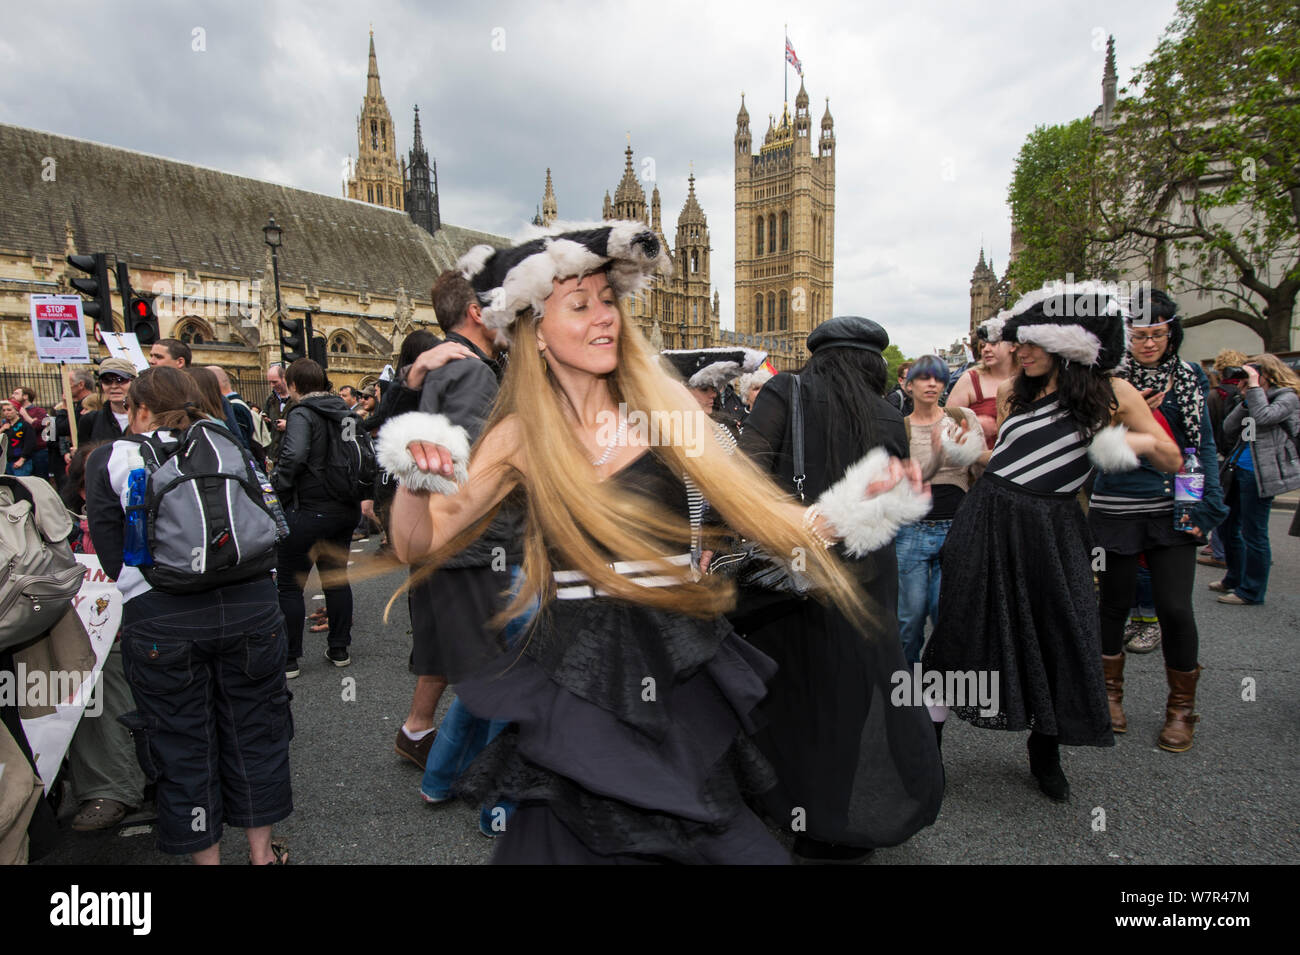 Danseurs de la Artful Badger Group, la danse en costumes, blaireau Blaireau anti cull mars, près des maisons du Parlement, Londres 1er juin 2013. Banque D'Images